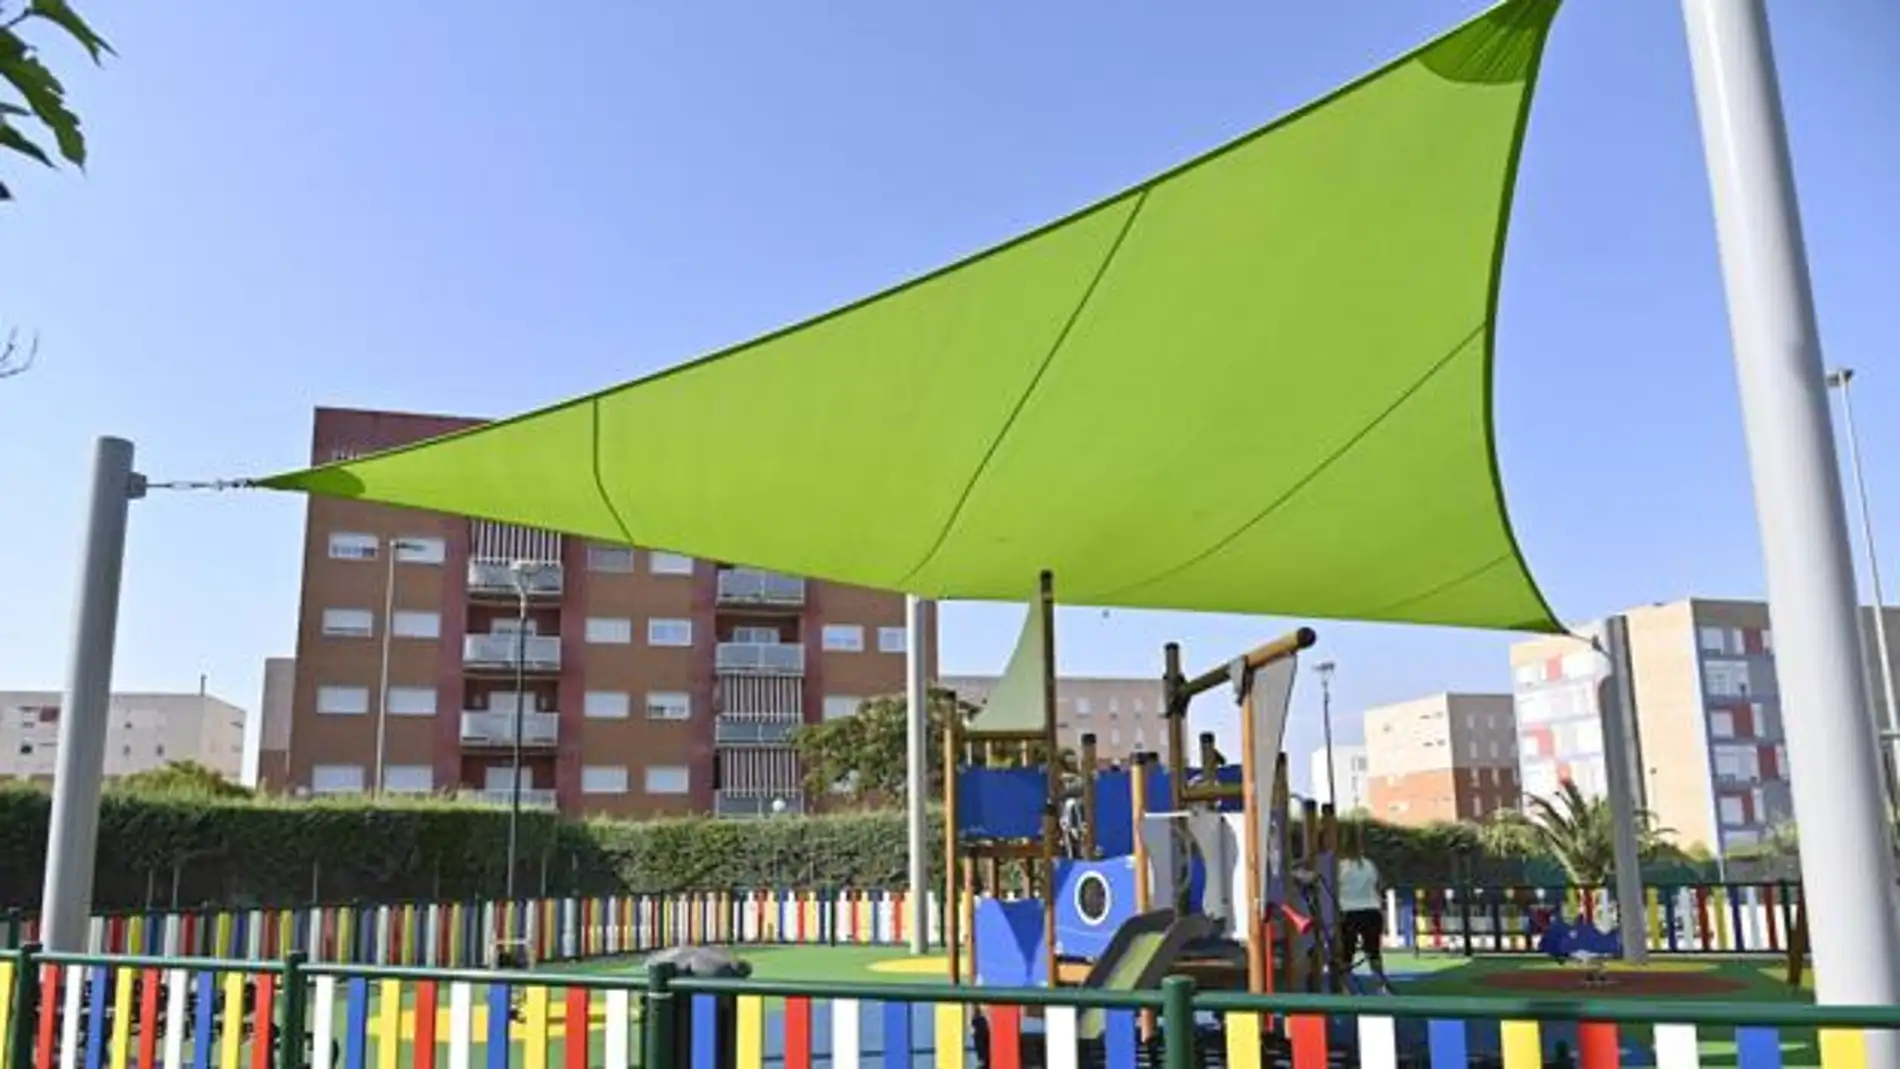 El alcalde de Badajoz levanta la suspensión temporal de cierre y precinto de zonas de juegos infantiles